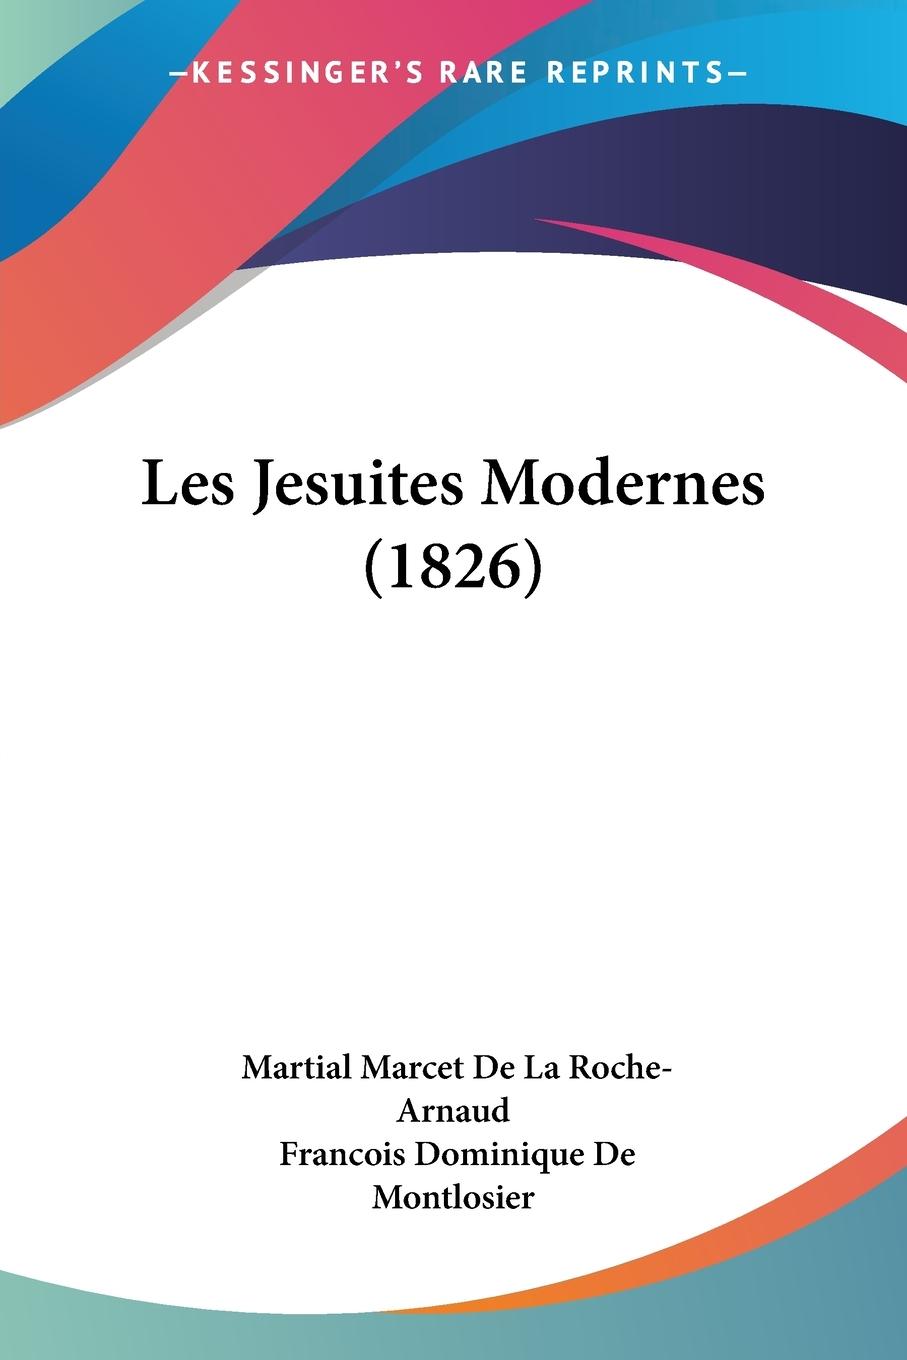 Les Jesuites Modernes (1826) - De La Roche-Arnaud, Martial Marcet De Montlosier, Francois Dominique